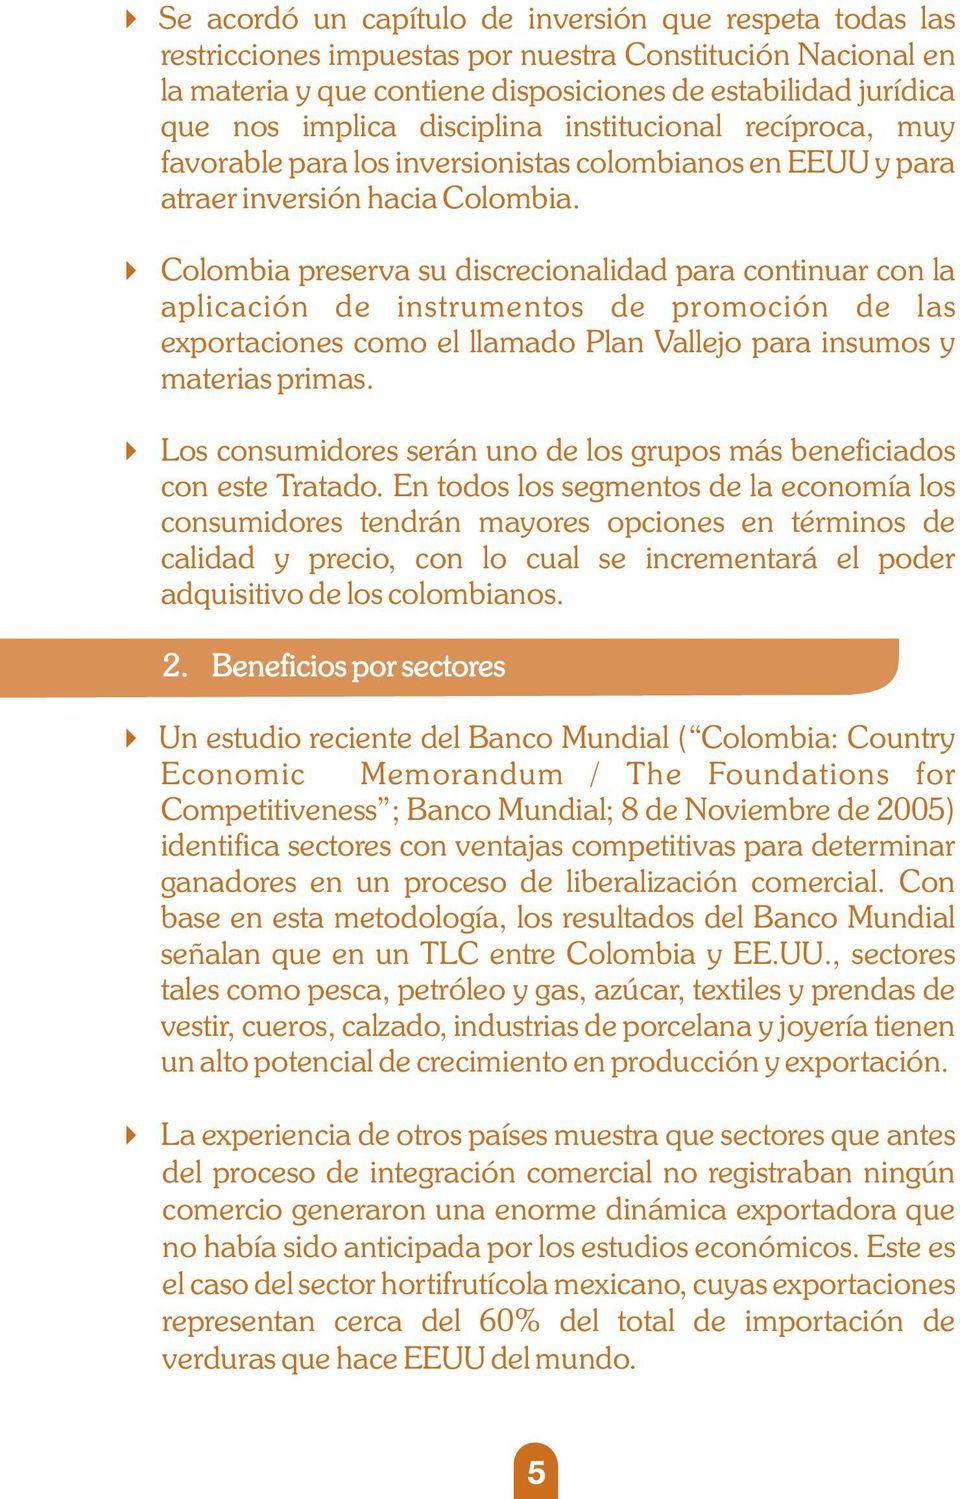 Colombia preserva su discrecionalidad para continuar con la aplicación de instrumentos de promoción de las exportaciones como el llamado Plan Vallejo para insumos y materias primas.